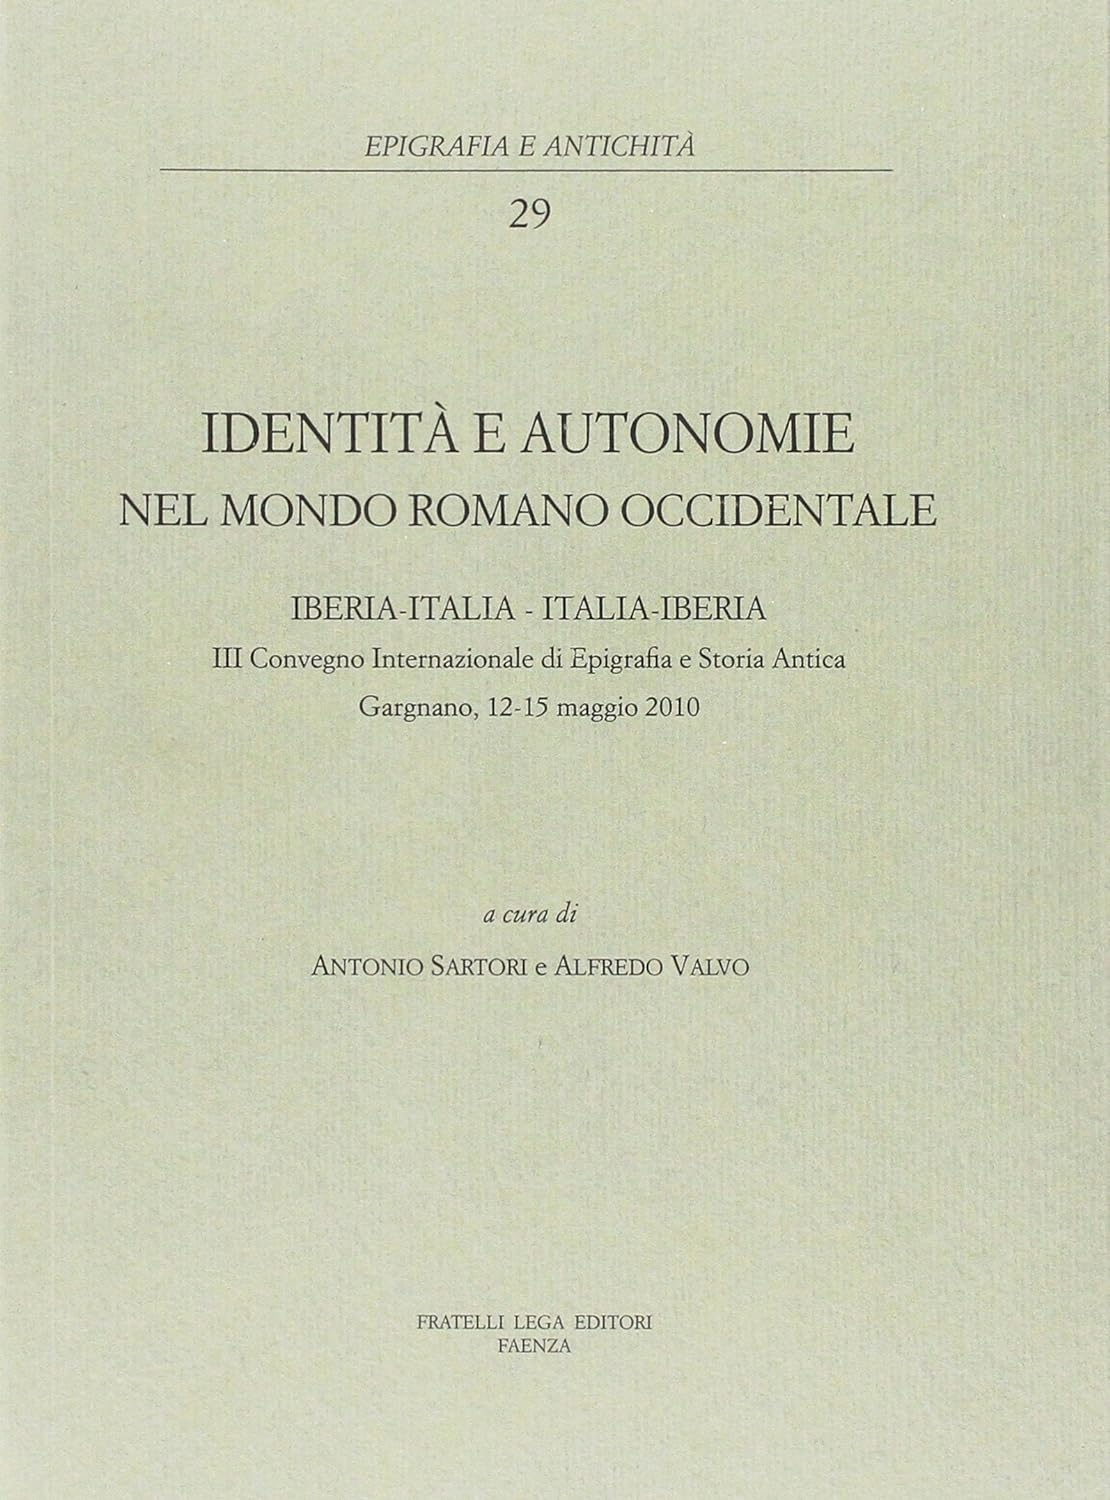 Imagen de portada del libro Identità e autonomie nel mondo romano occidentale